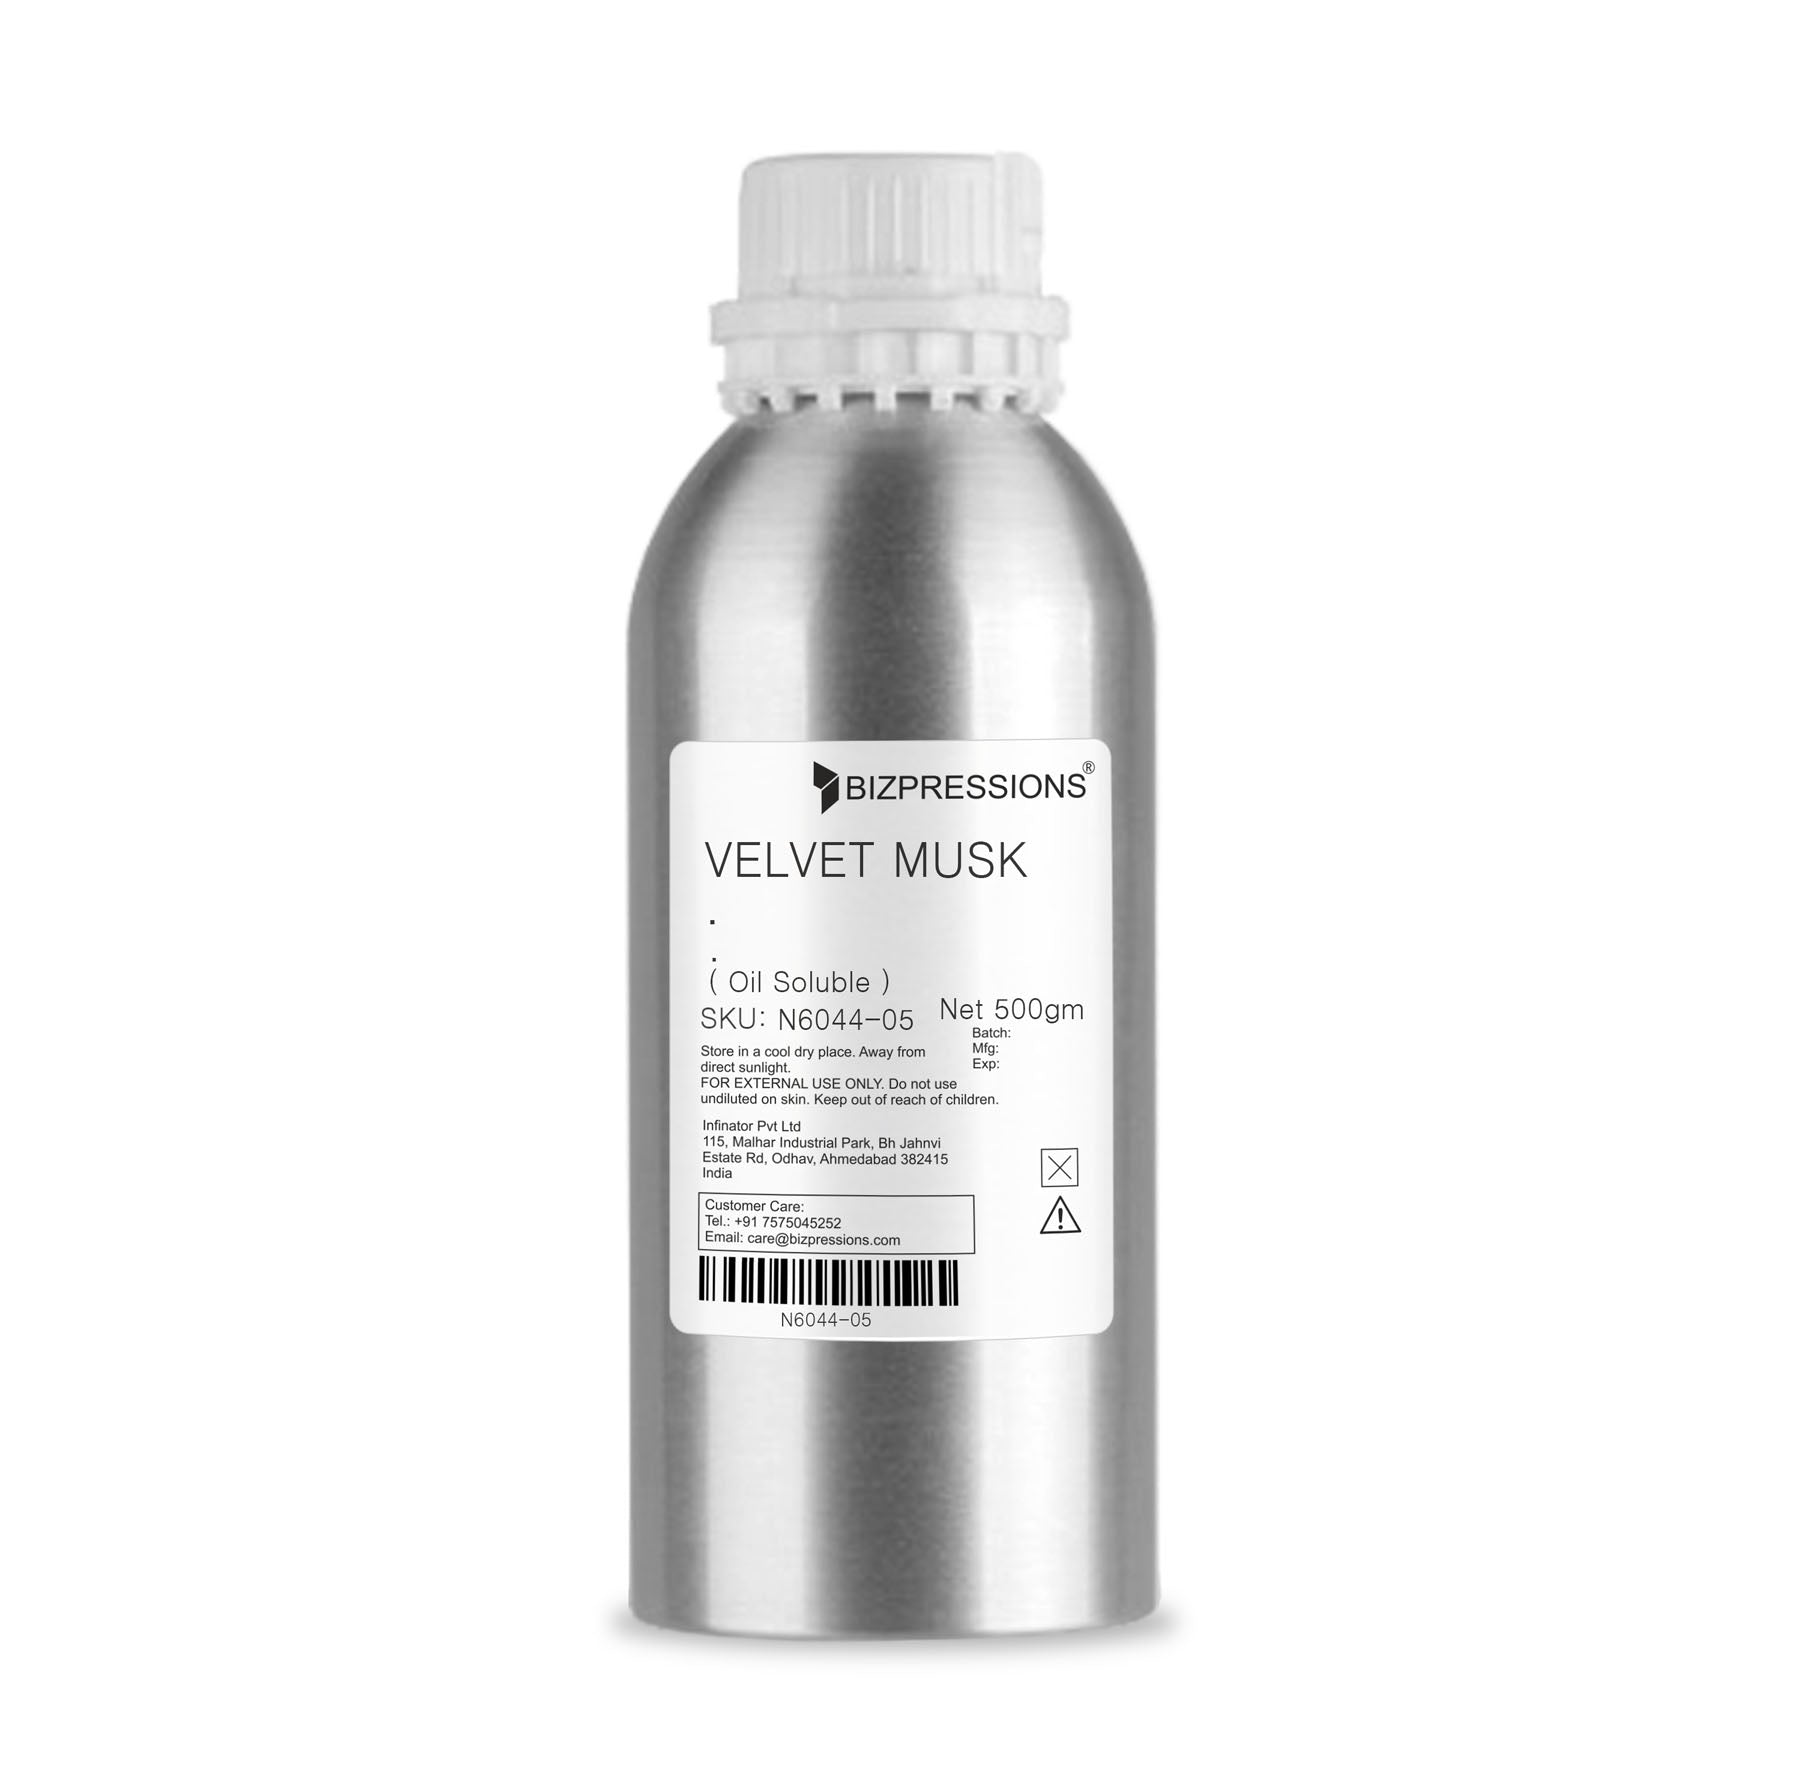 VELVET MUSK - Fragrance ( Oil Soluble ) - 500 gm